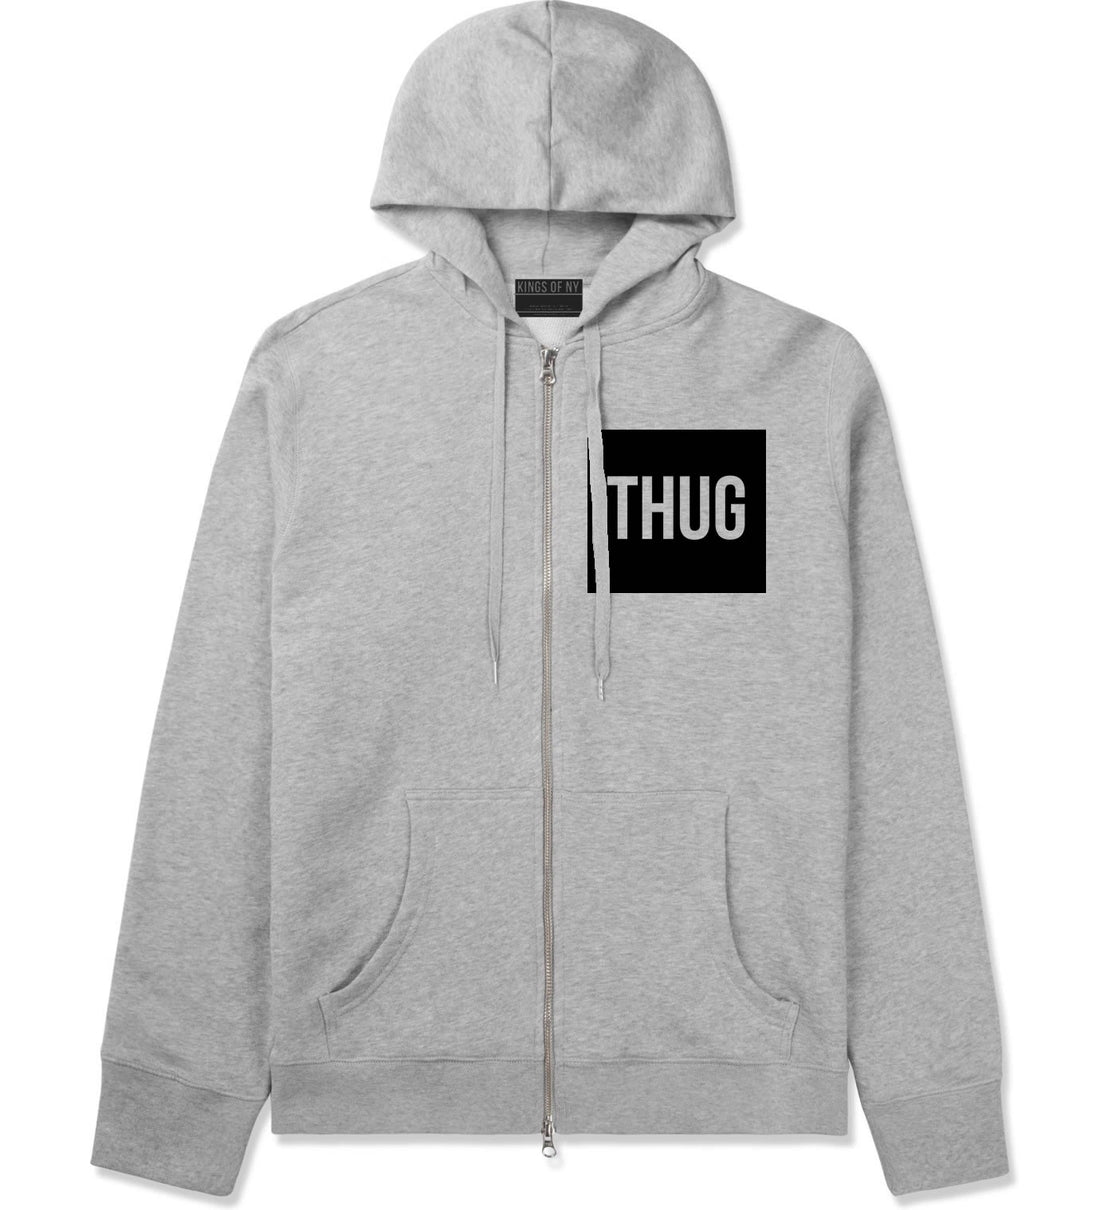 Thug Gangsta Box Logo Zip Up Hoodie Hoody in Grey by Kings Of NY